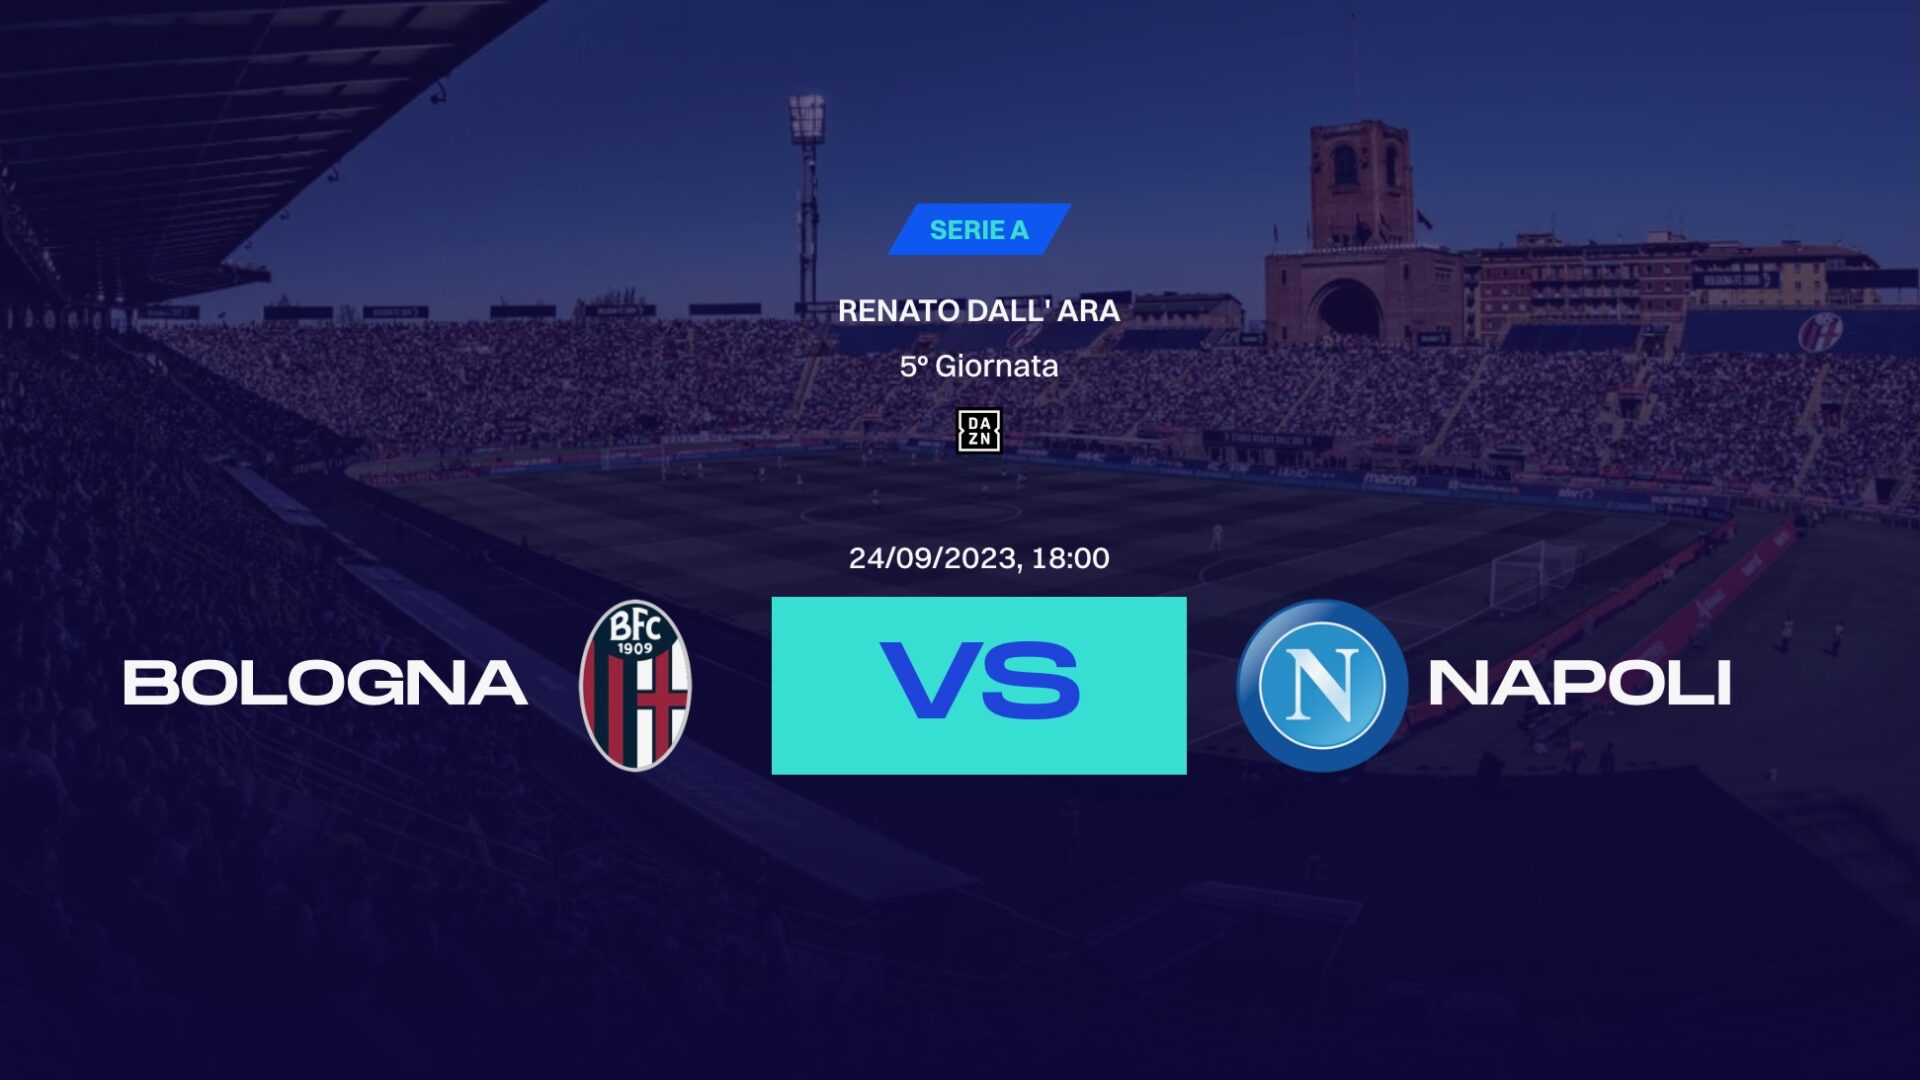 Serie A Tim 2023/2024, quinta giornata: Bologna Football Club 1909-Società Sportiva Calcio Napoli, le probabili formazioni